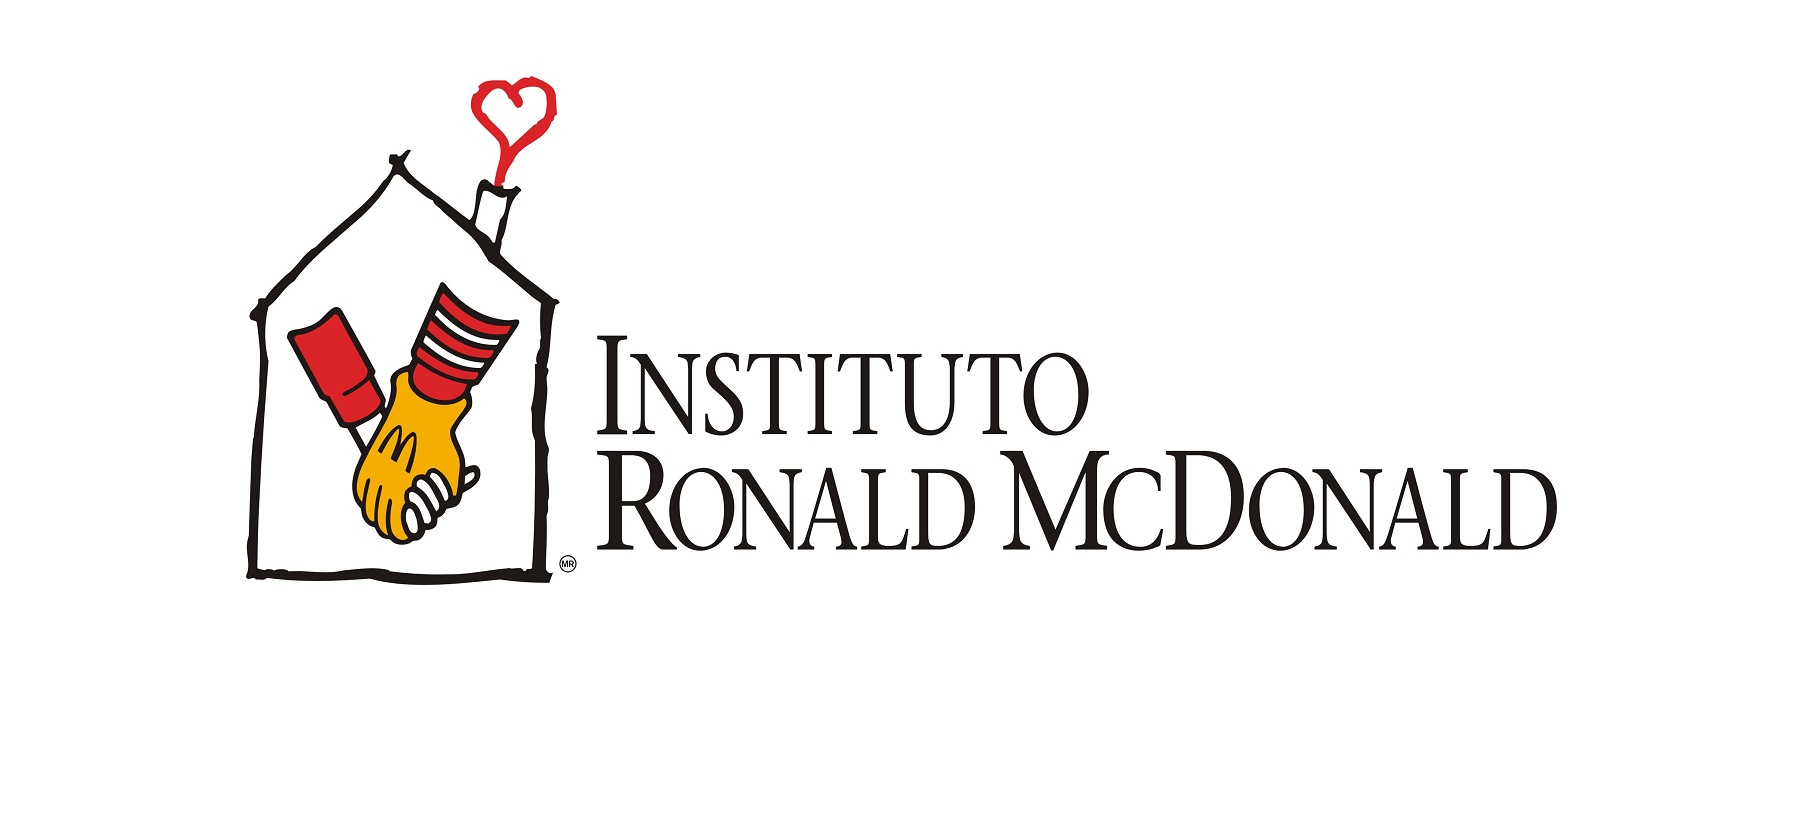 Kindle conquista Instituto Ronald McDonald